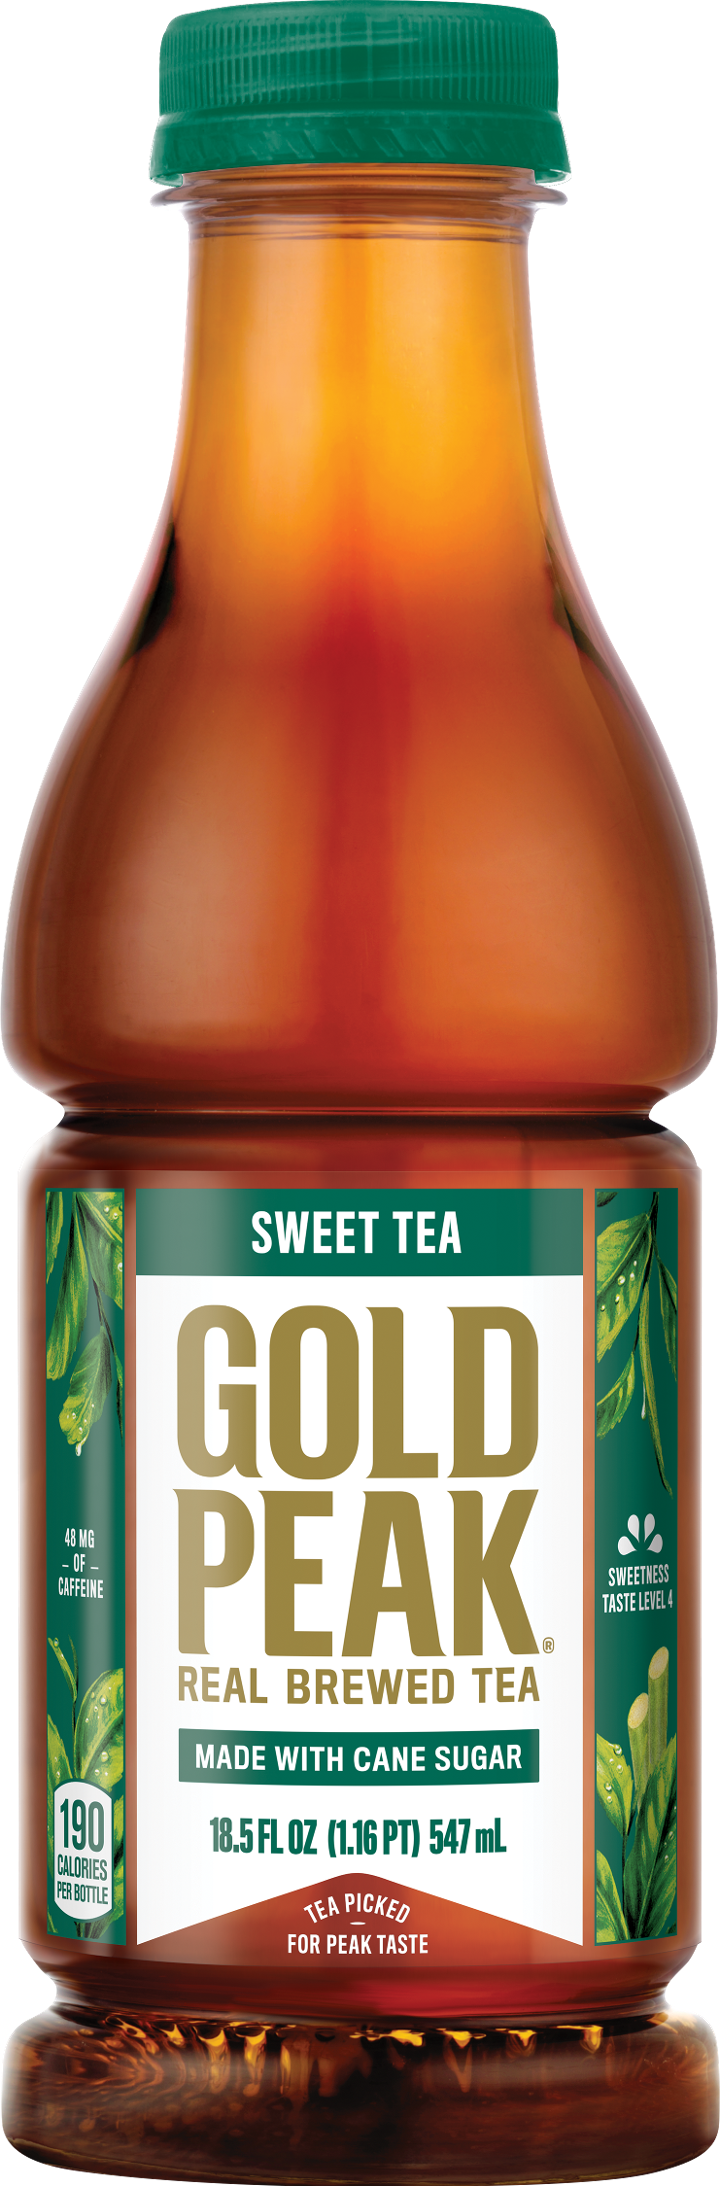 Tea-Gold Peak Sweet Tea